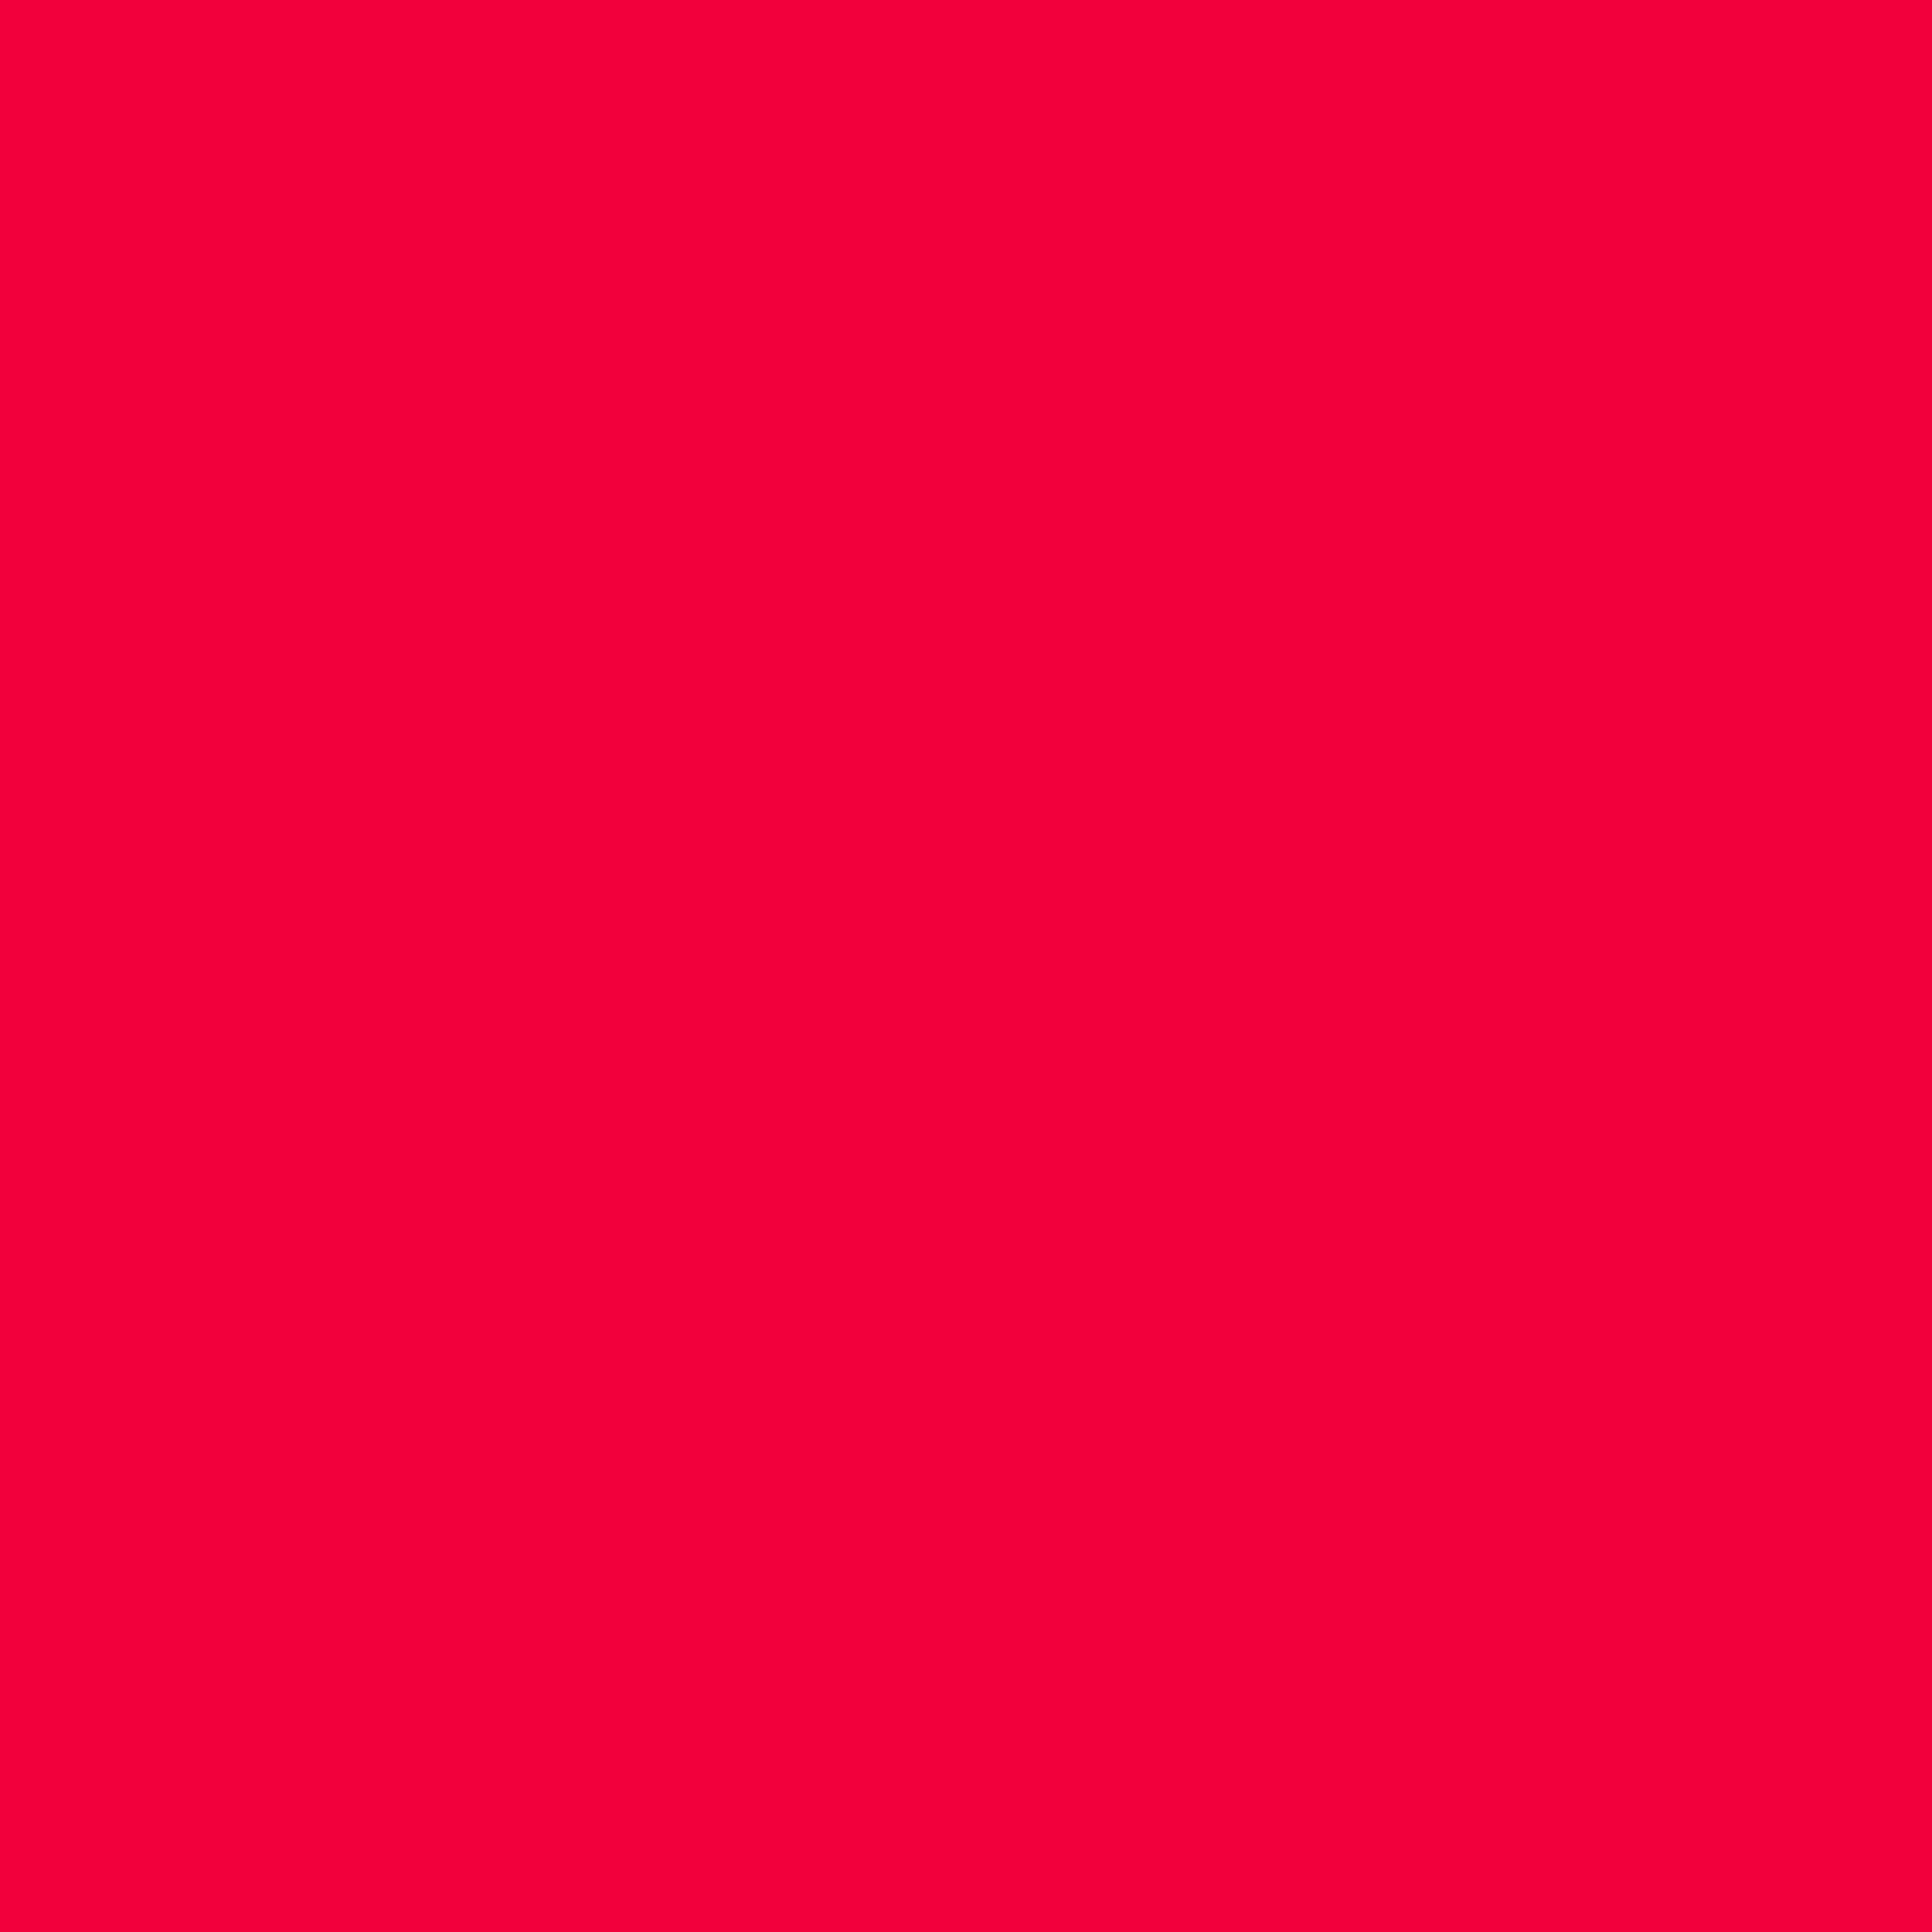 Nền màu đỏ Munsell 2048x2048: Được khai thác từ hệ thống màu Munsell, gam màu đỏ trầm ấm này sẽ làm say đắm người xem bởi sự sang trọng và quý phái. Hãy thử khám phá những tấm nền được lấy cảm hứng từ gam màu đỏ Munsell 2048x2048, và tận hưởng những trải nghiệm hoàn toàn mới lạ với sắc màu đẹp nhất.